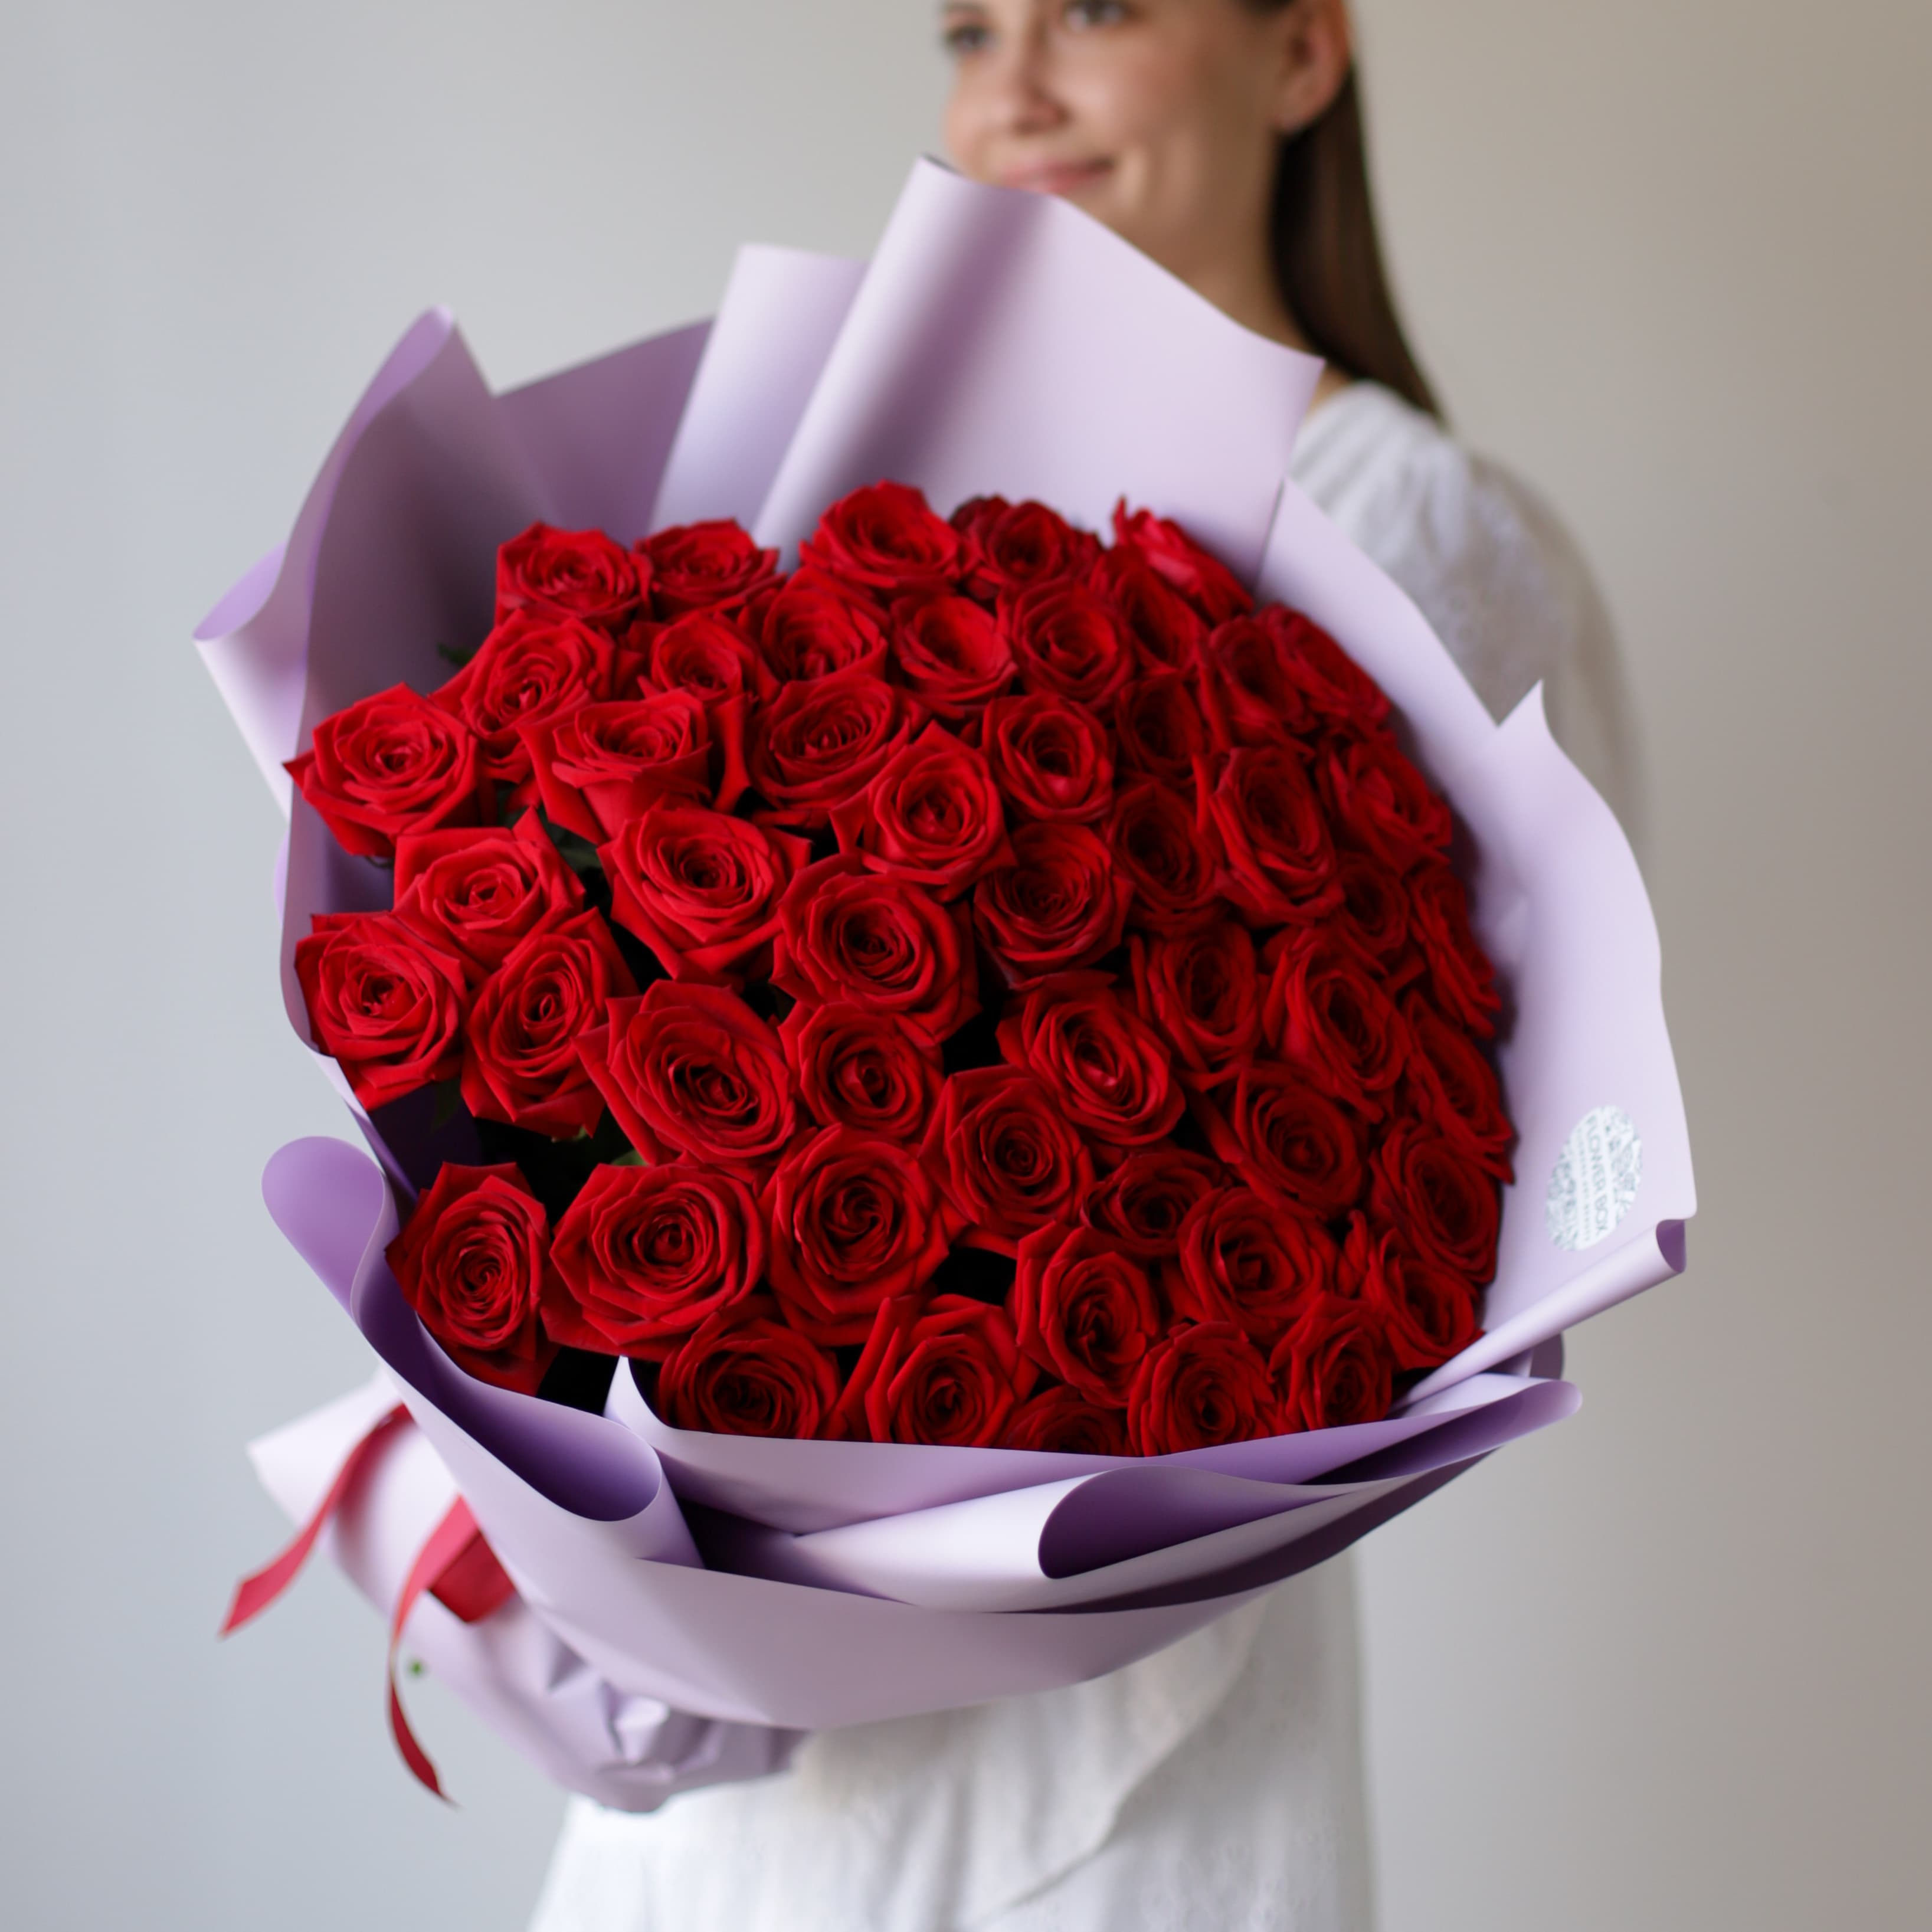 Розы красные в лавандовом оформлении (Россия, 51 шт) №1110 - Фото 29